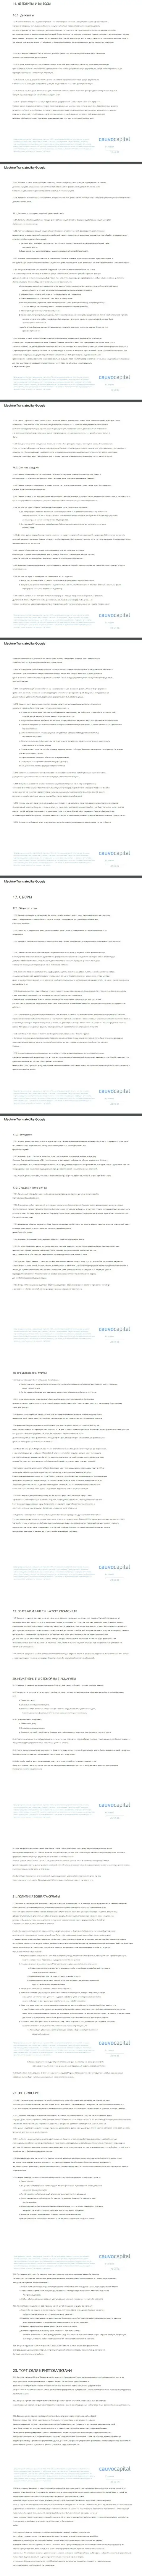 3 часть клиентского соглашения Форекс-дилингового центра Cauvo Capital